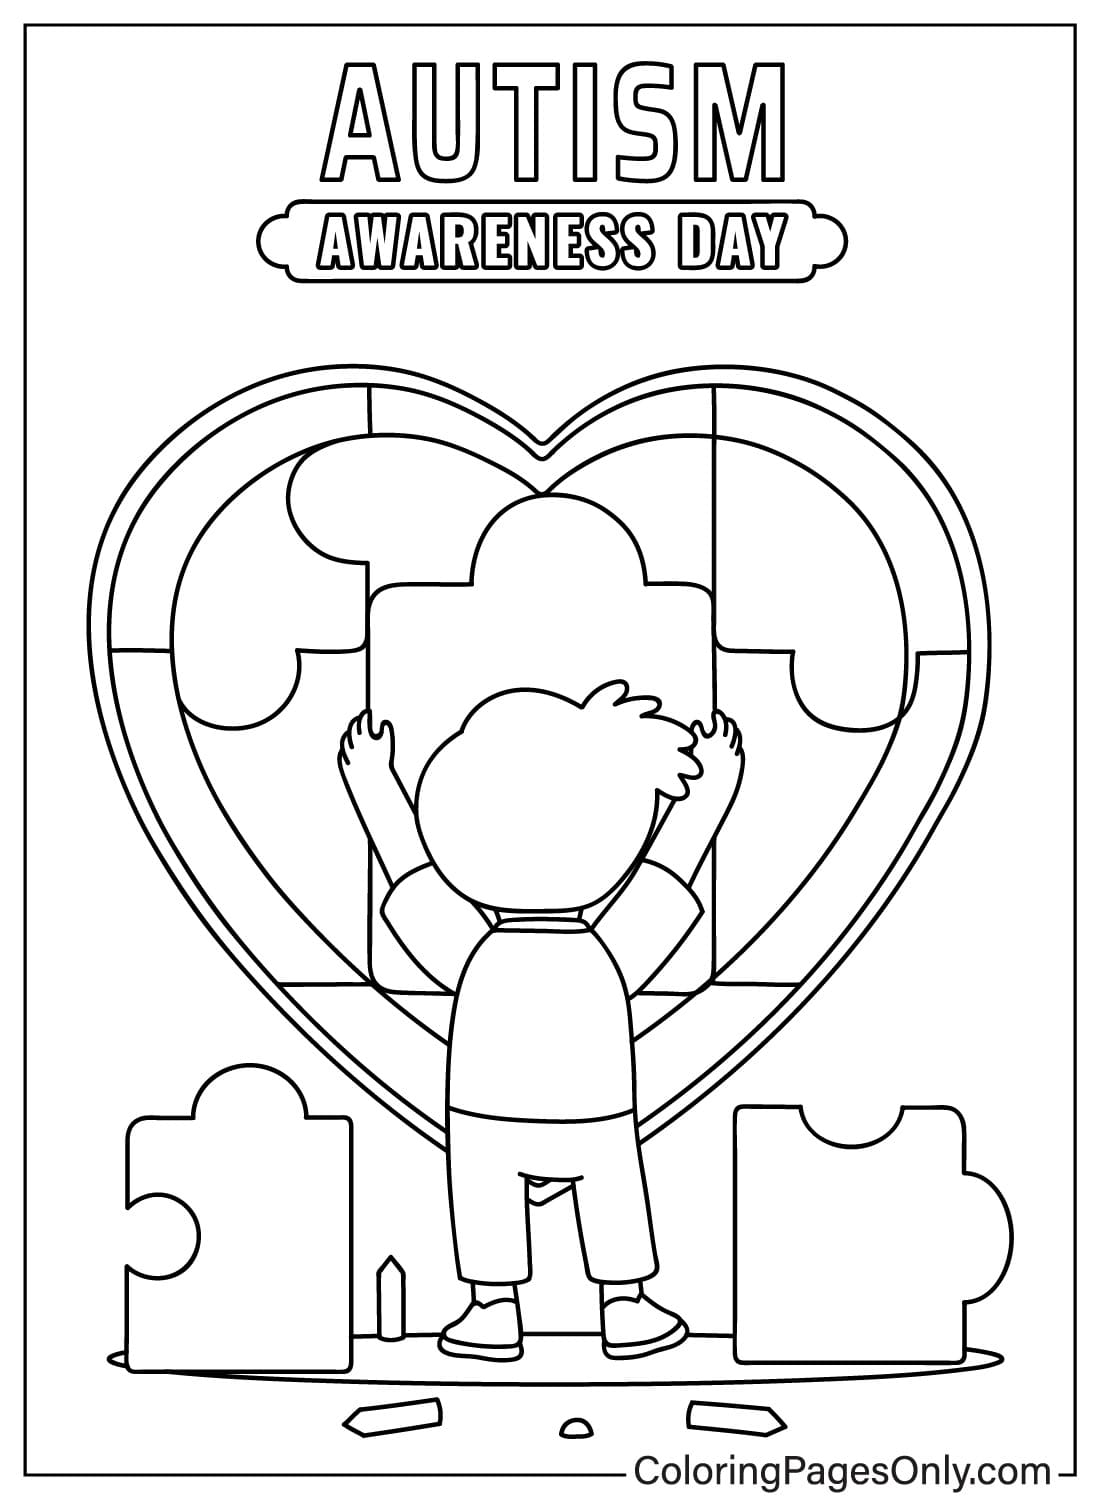 Página para colorear de concientización sobre el autismo para adultos del Día Mundial de Concientización sobre el Autismo